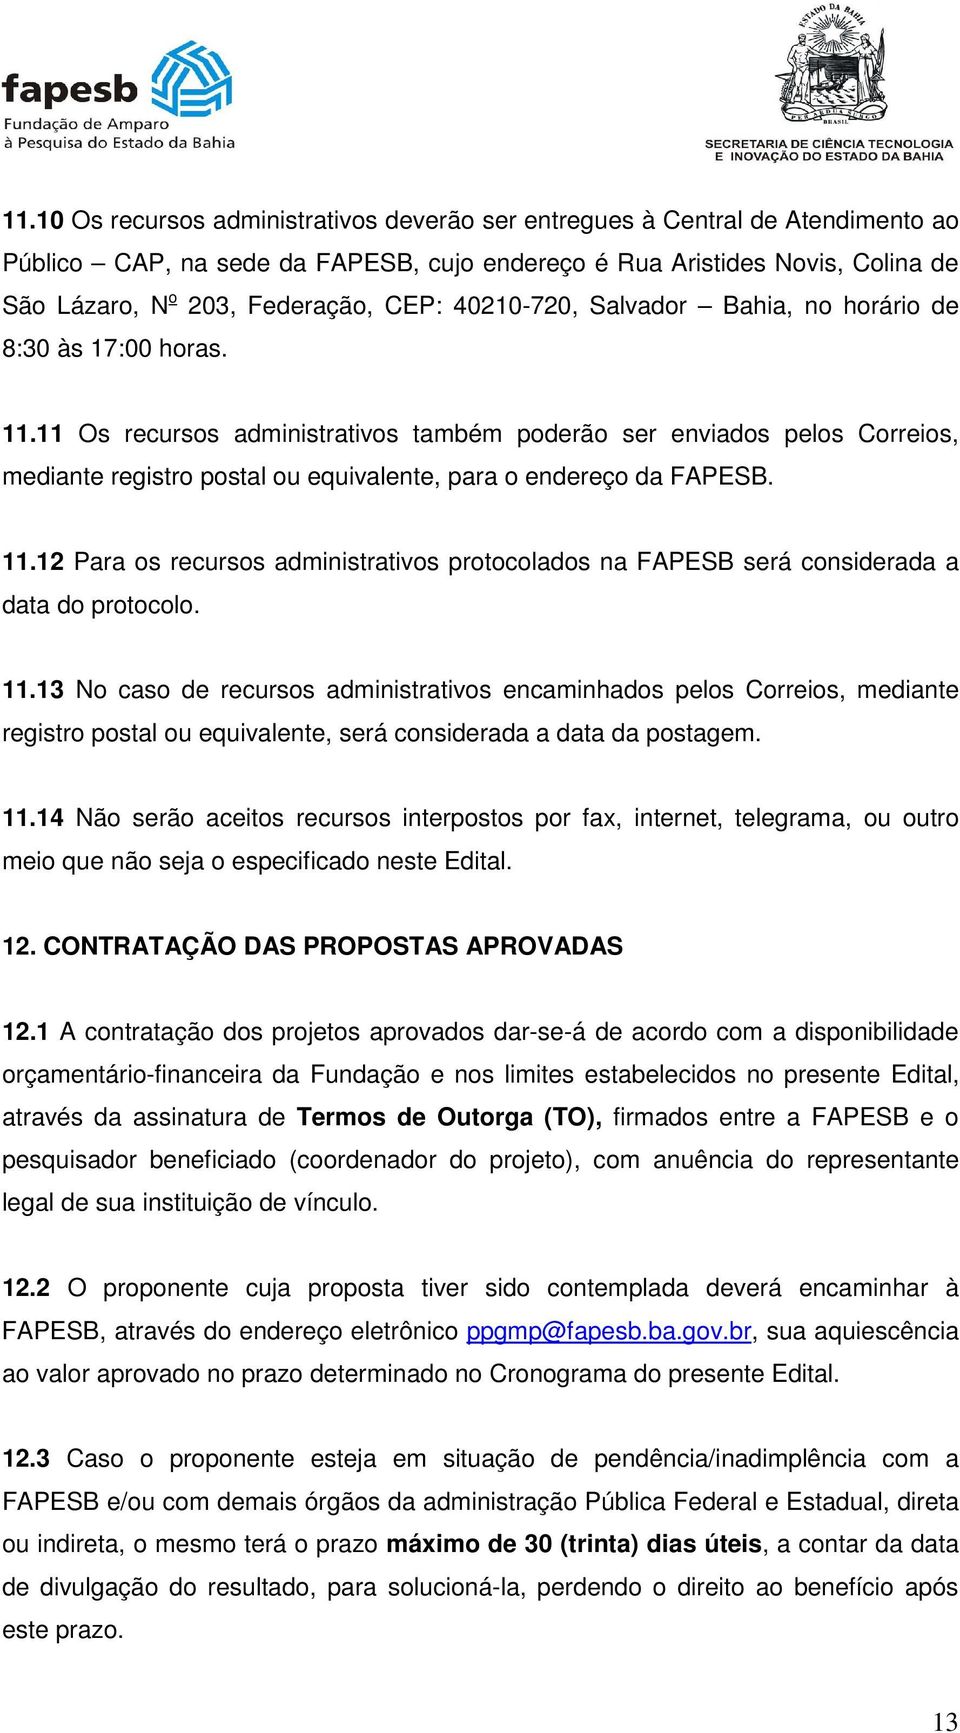 11 Os recursos administrativos também poderão ser enviados pelos Correios, mediante registro postal ou equivalente, para o endereço da FAPESB. 11.